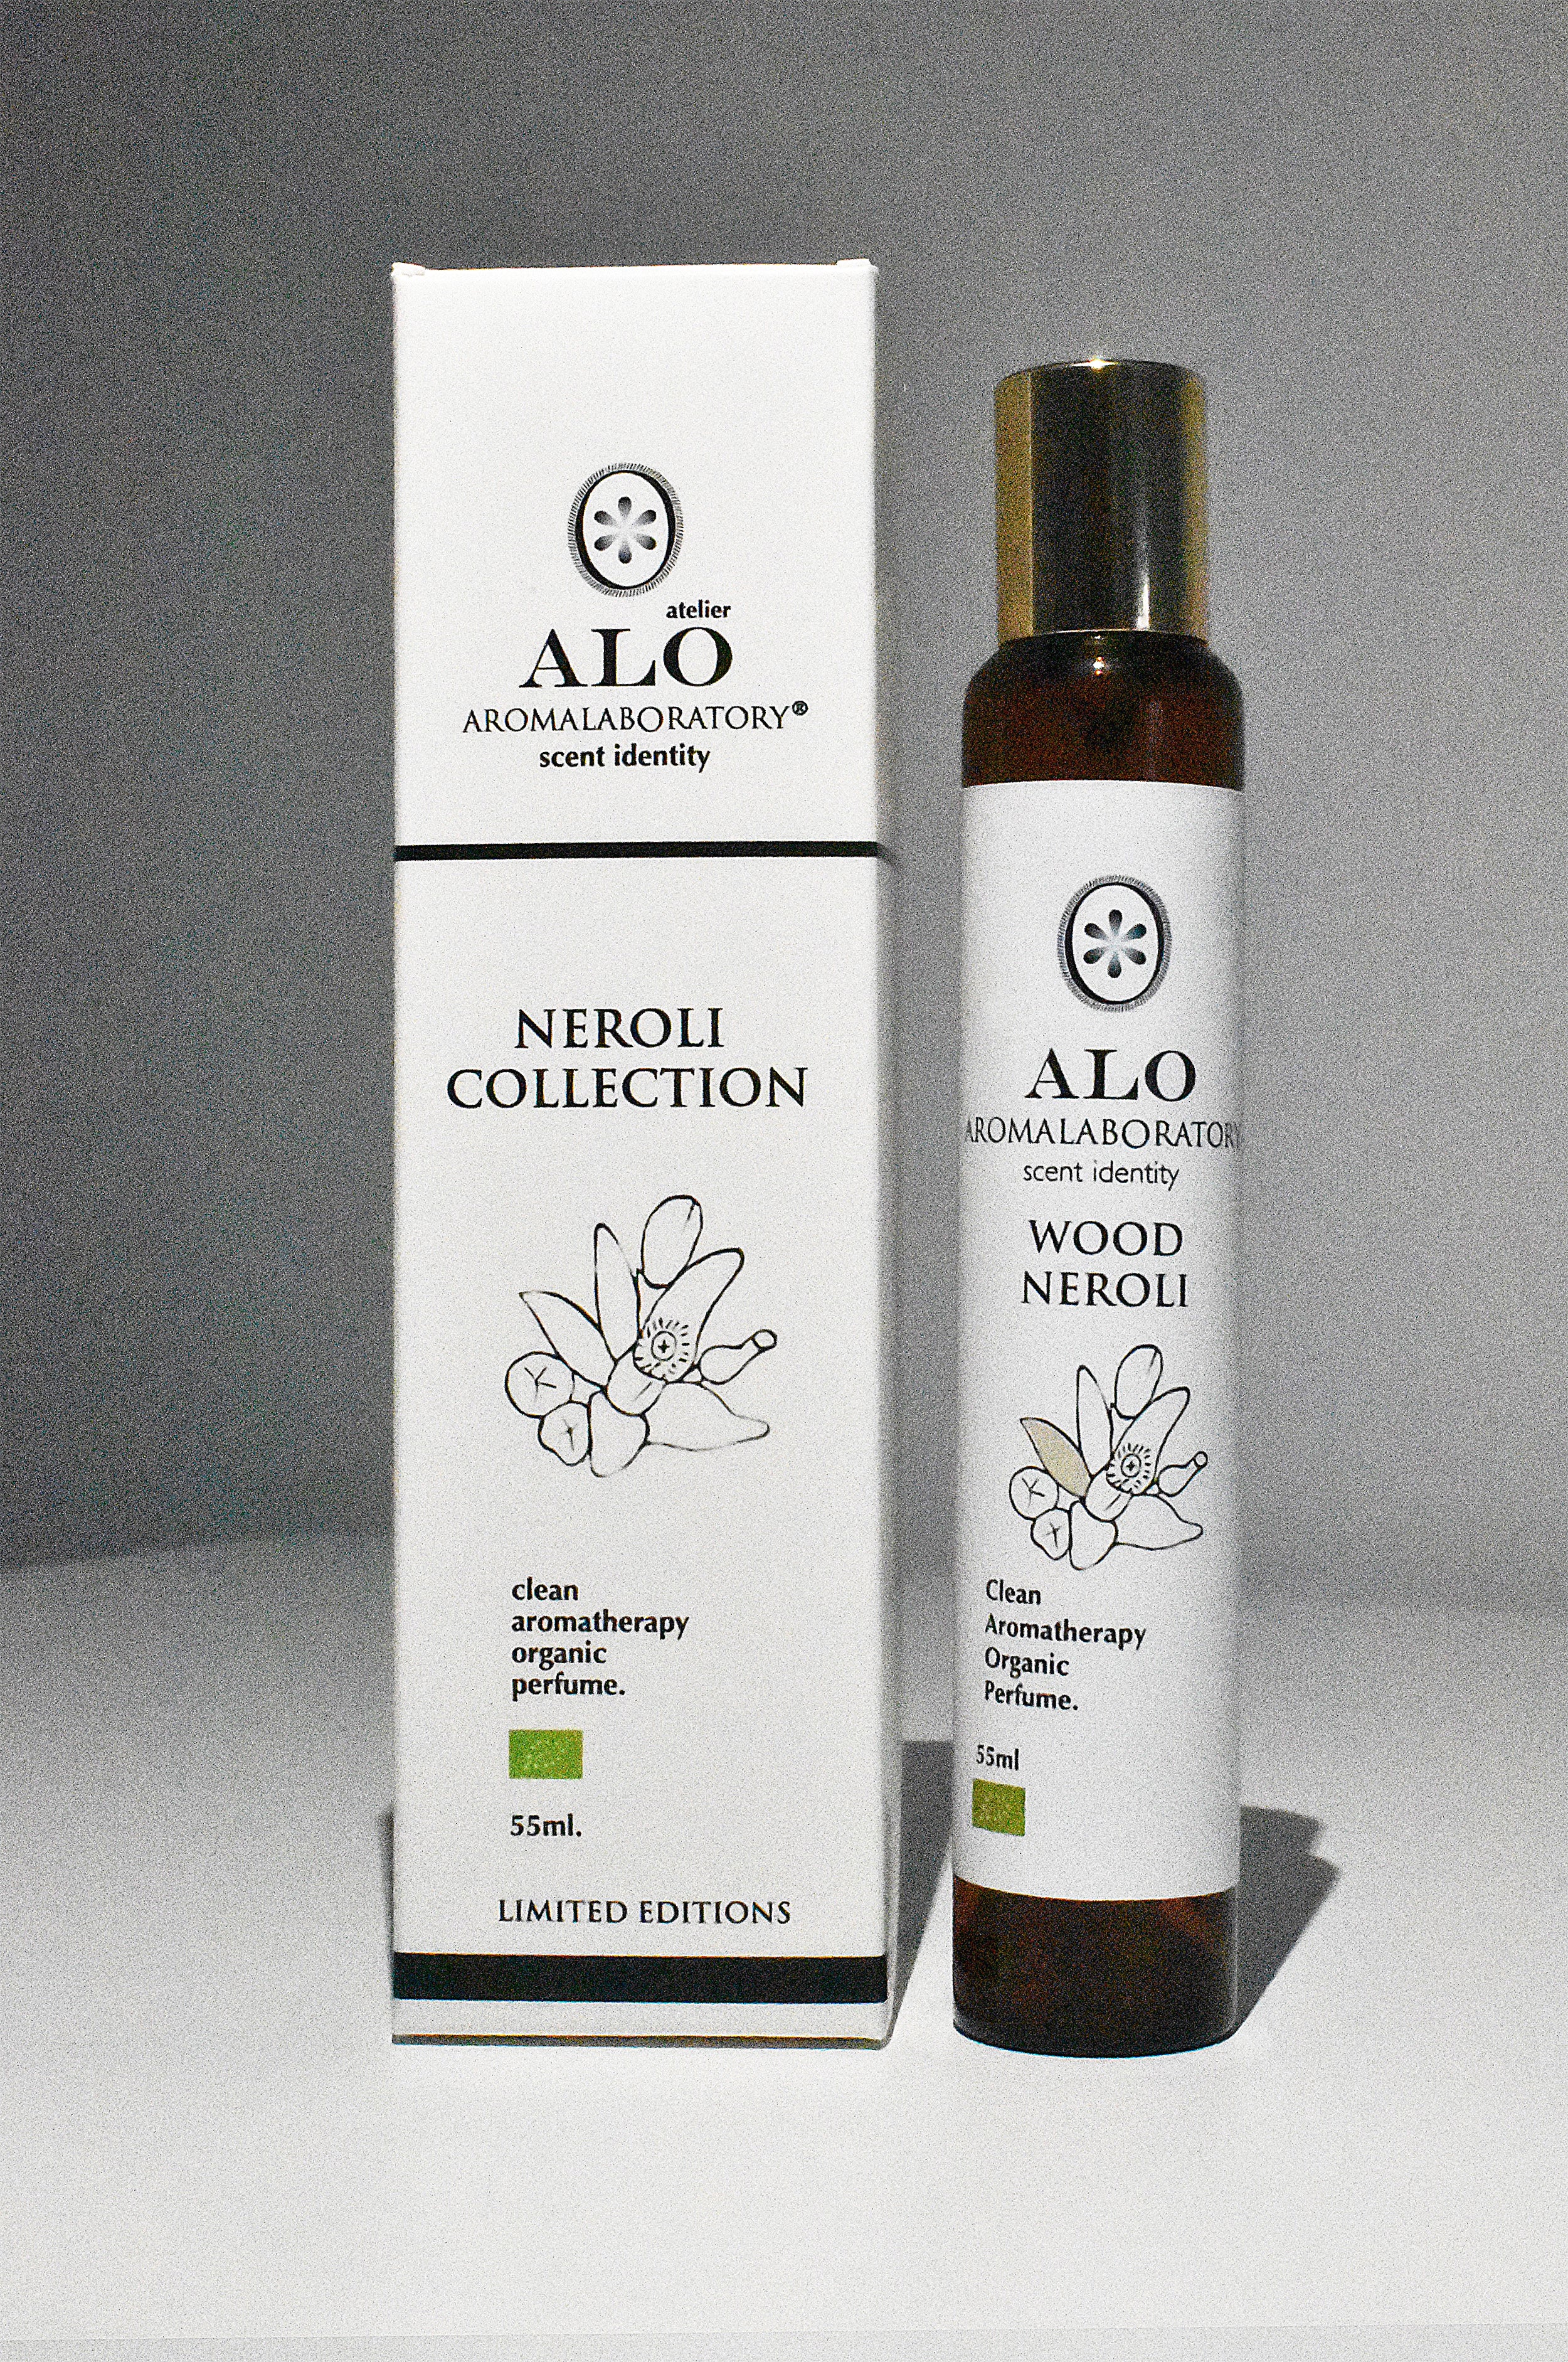 WOOD NEROLI. Aromatherapy Clean Perfume. Organic. 55ml.